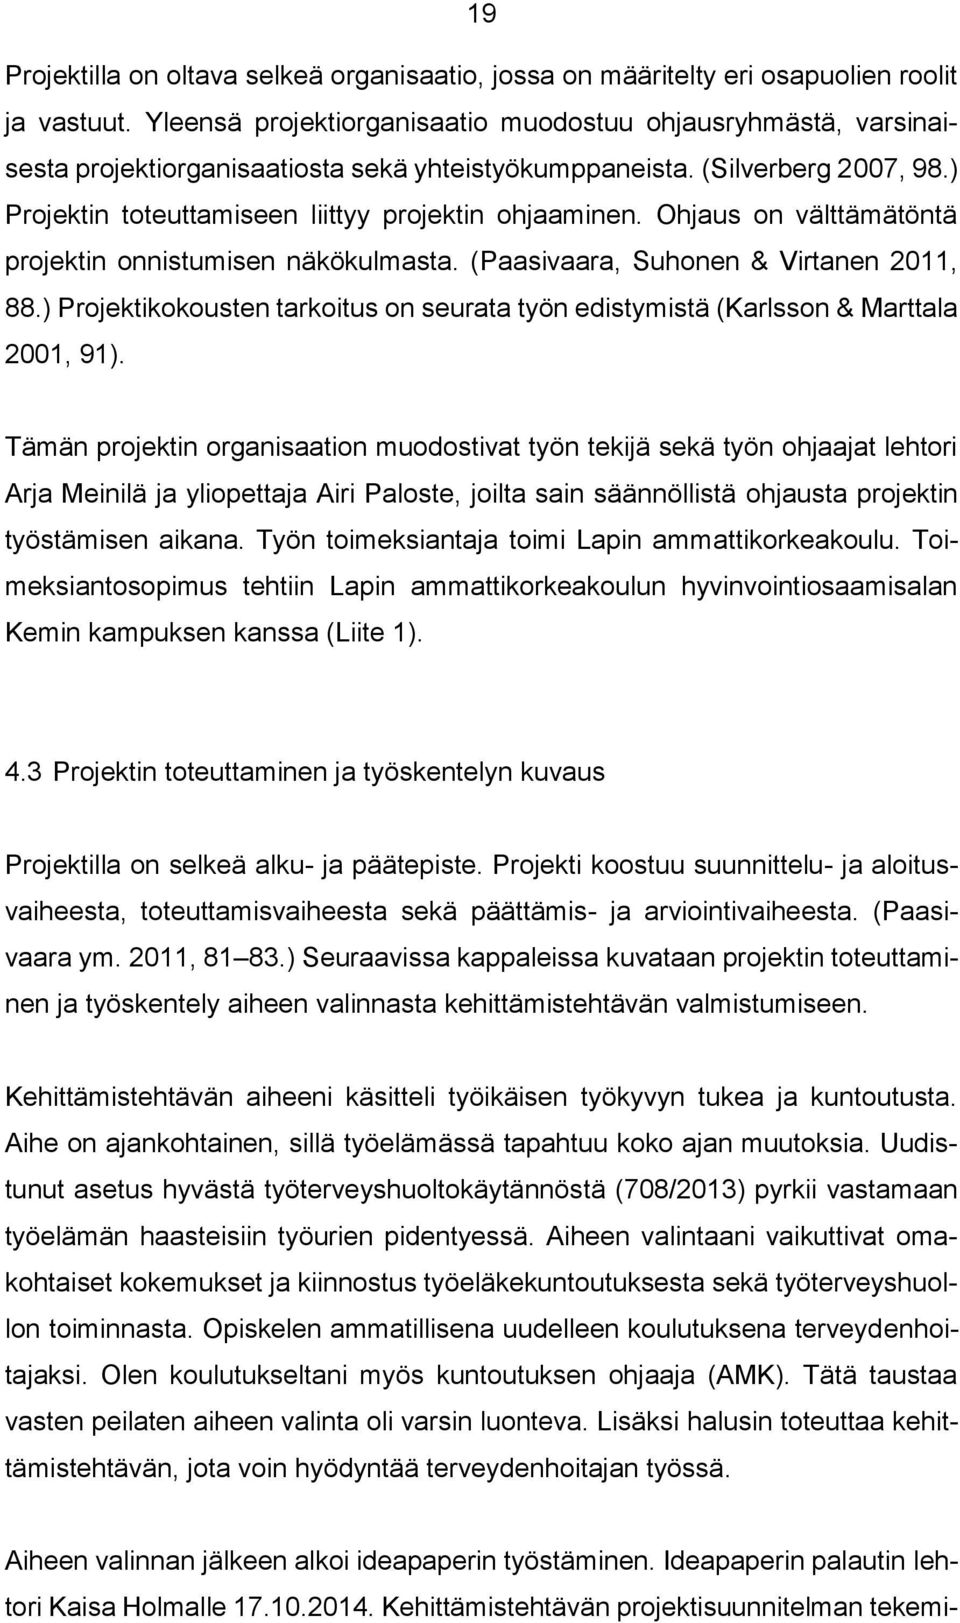 Ohjaus on välttämätöntä projektin onnistumisen näkökulmasta. (Paasivaara, Suhonen & Virtanen 2011, 88.) Projektikokousten tarkoitus on seurata työn edistymistä (Karlsson & Marttala 2001, 91).